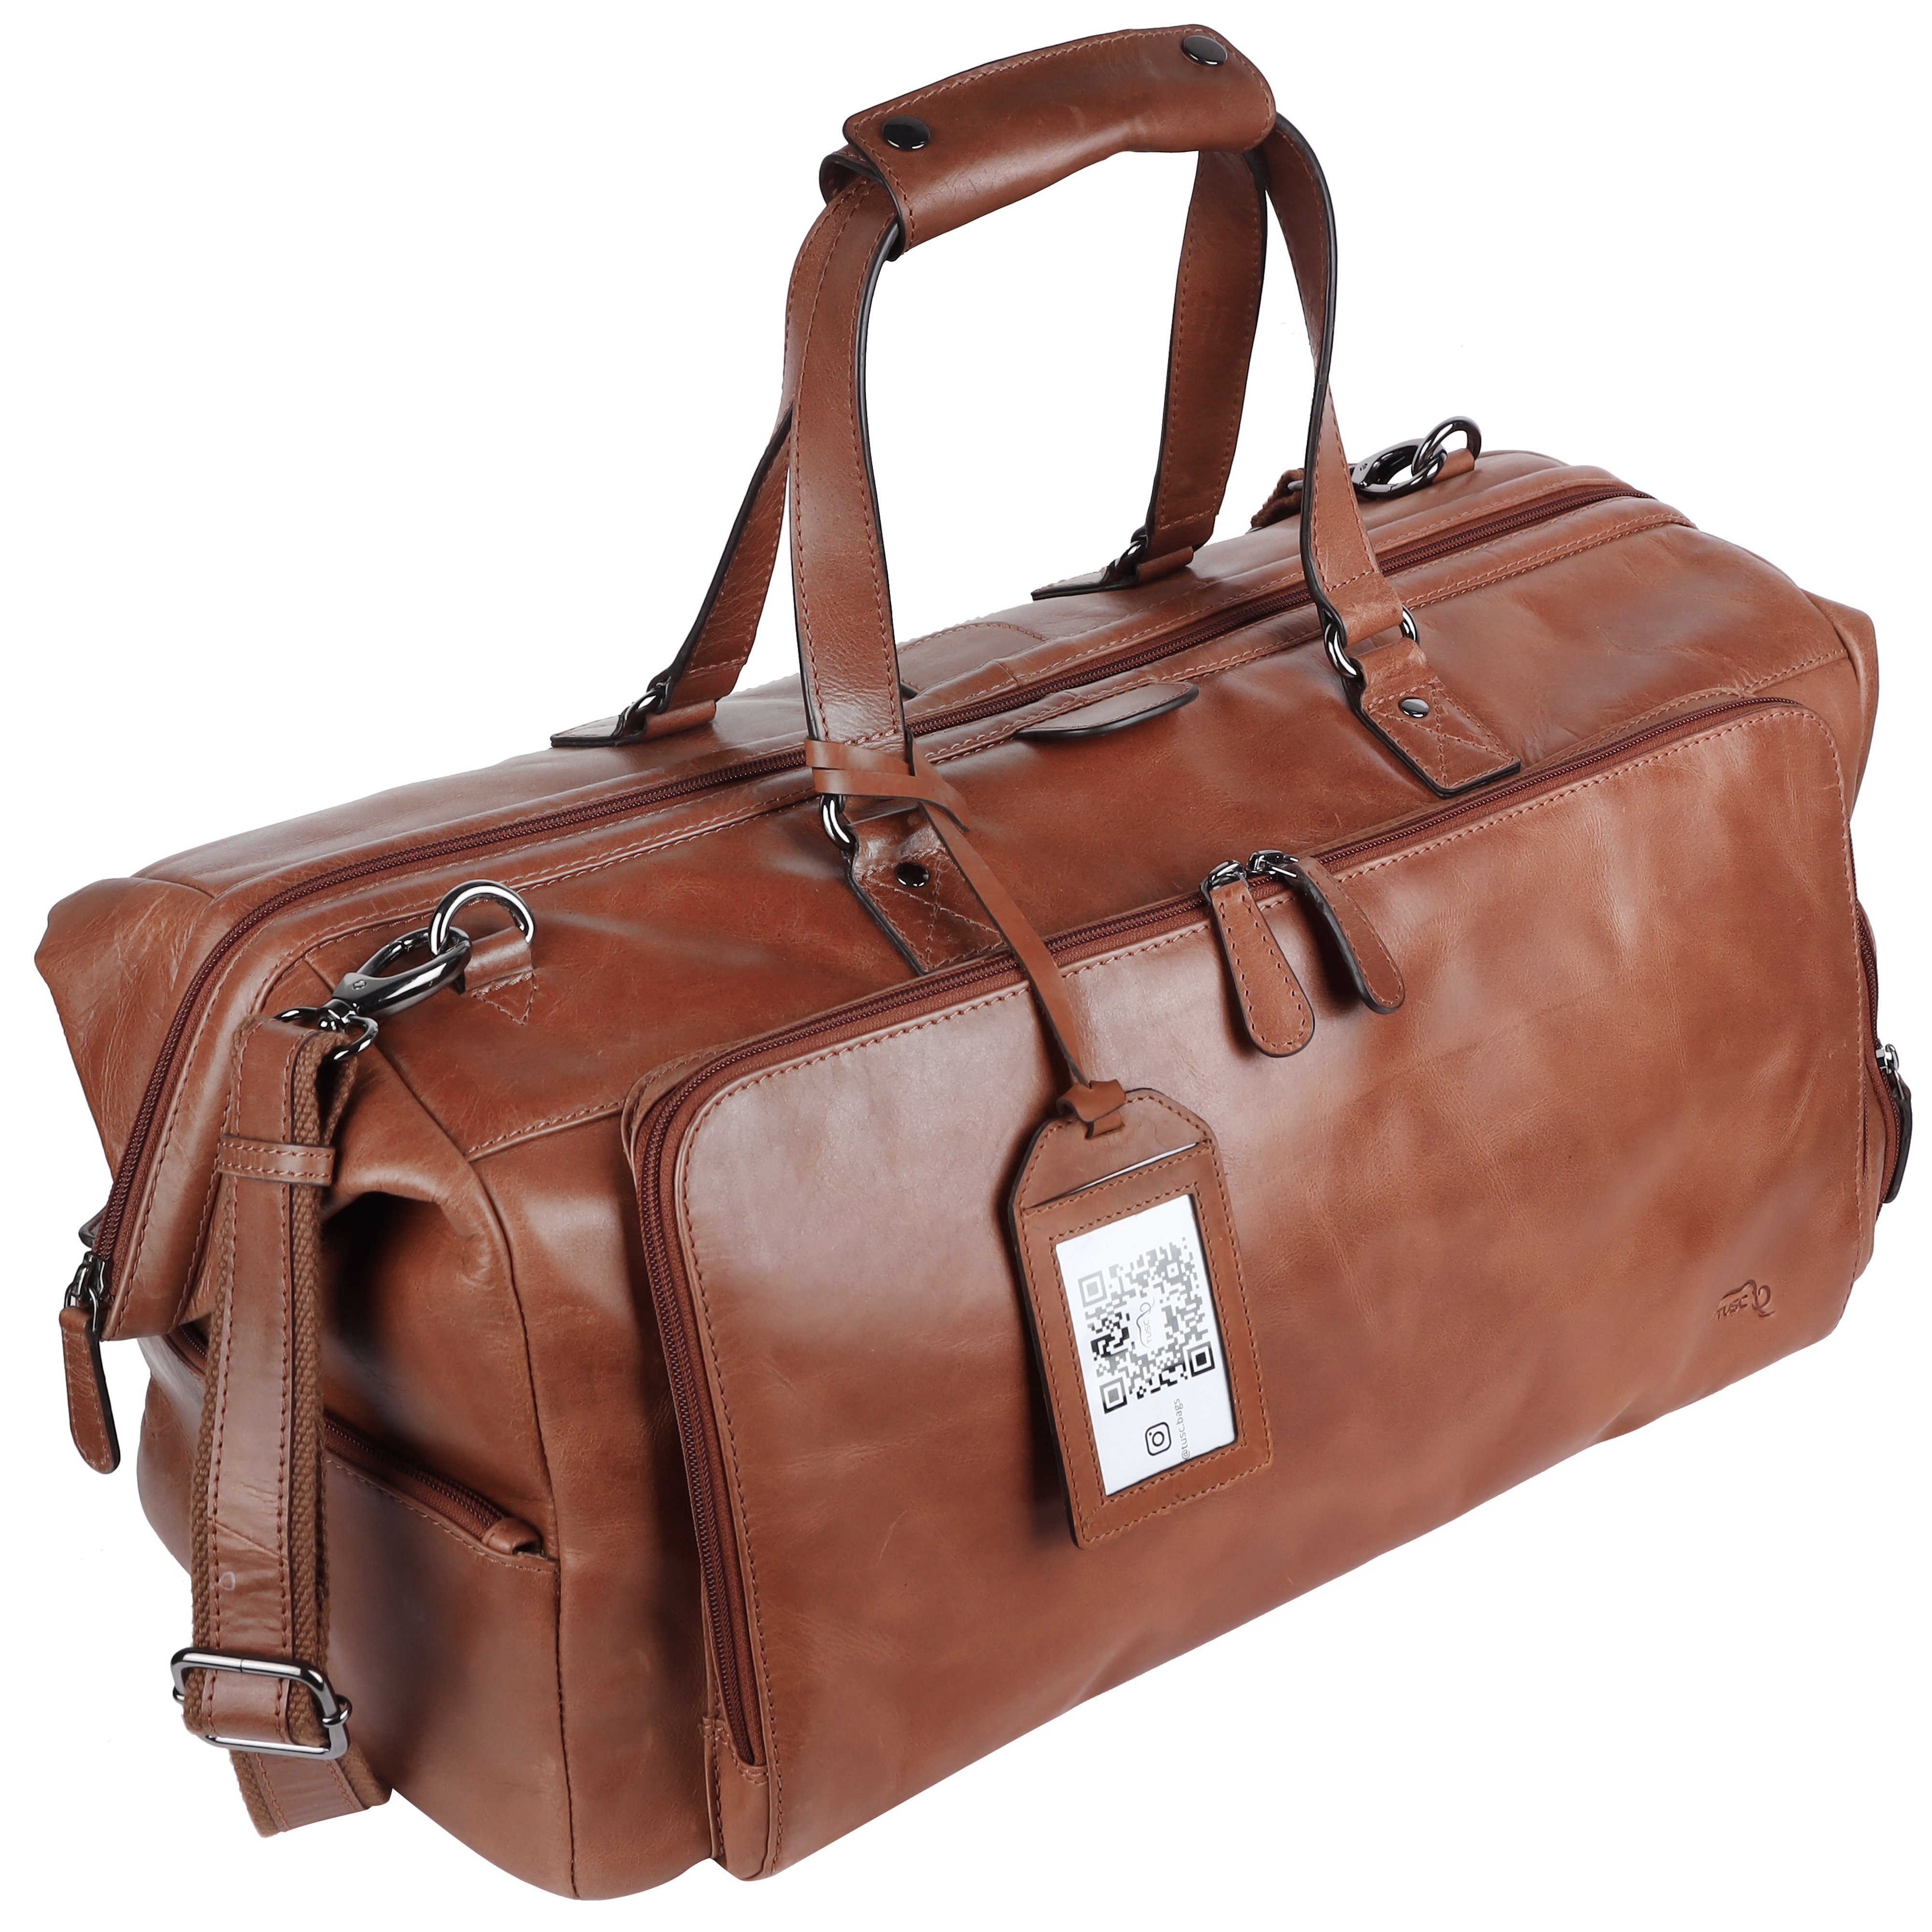 TUSC Reisetasche Tarvos, Premium Reisetasche Leder mit Laptopfach aus